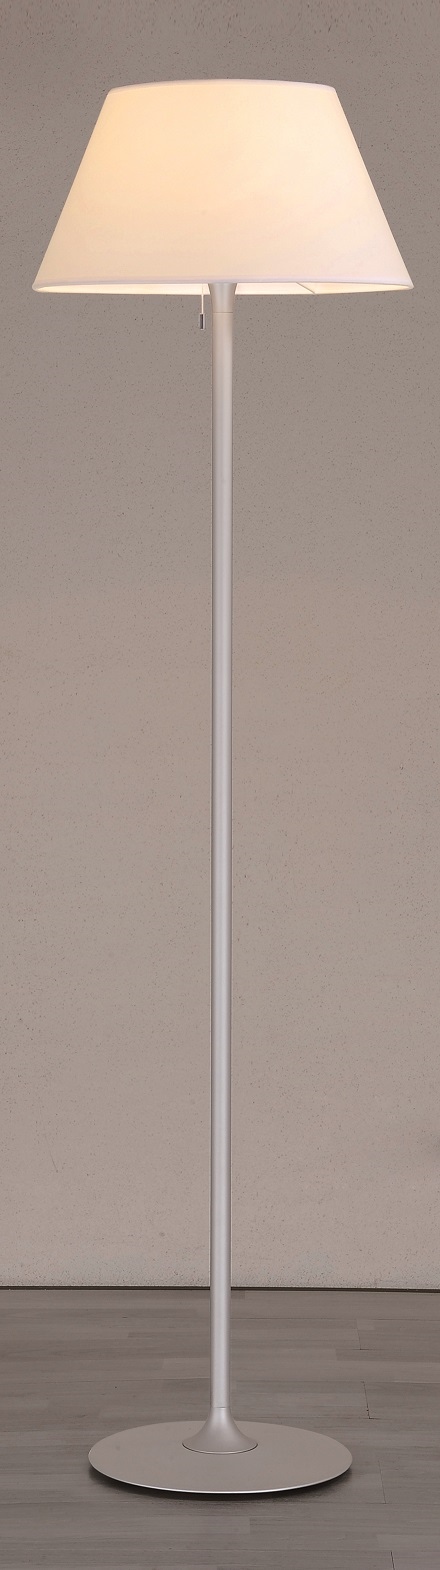 Lampenlux Stehlampe Leigal Stehleuchte Stoff Nickel Weiß Grau 165cm Ø 45 cm mit Zugschalter E27 40W